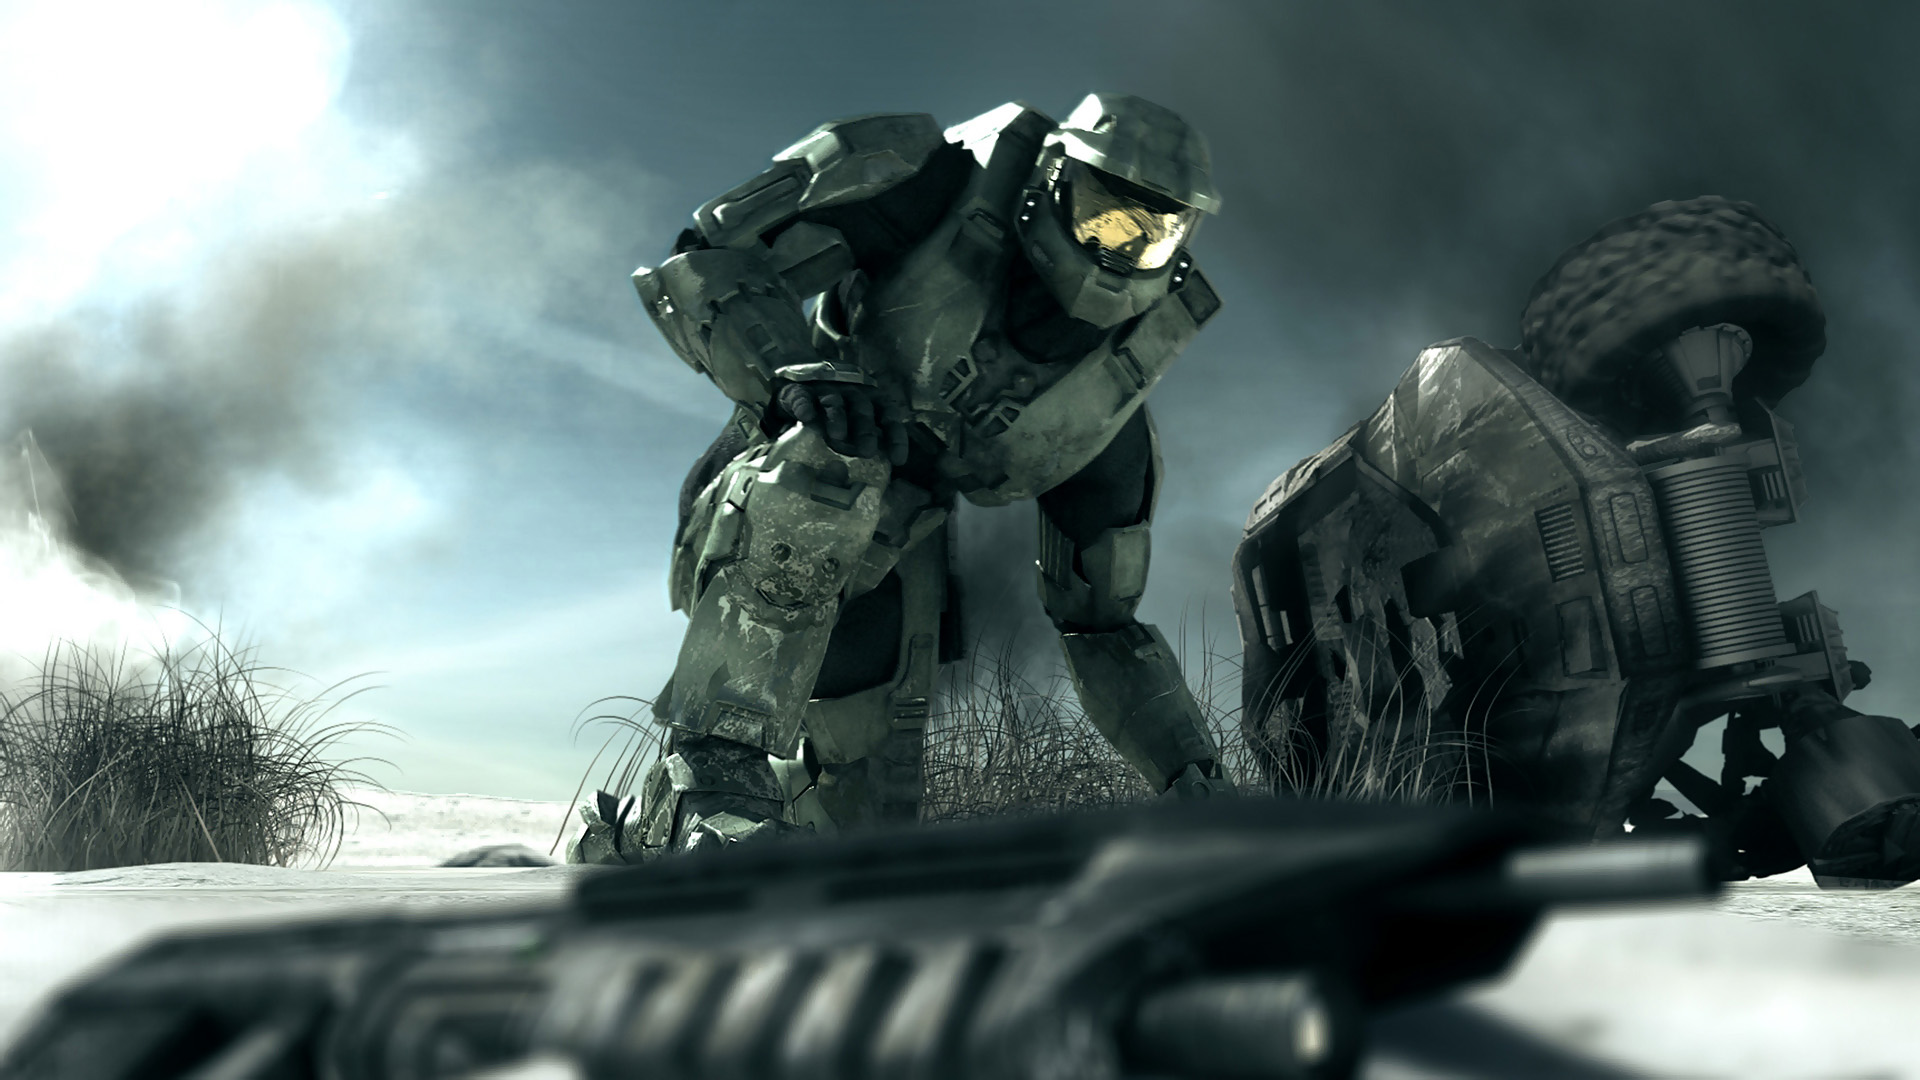 Descargar fondos de escritorio de Halo: Combat Evolved HD